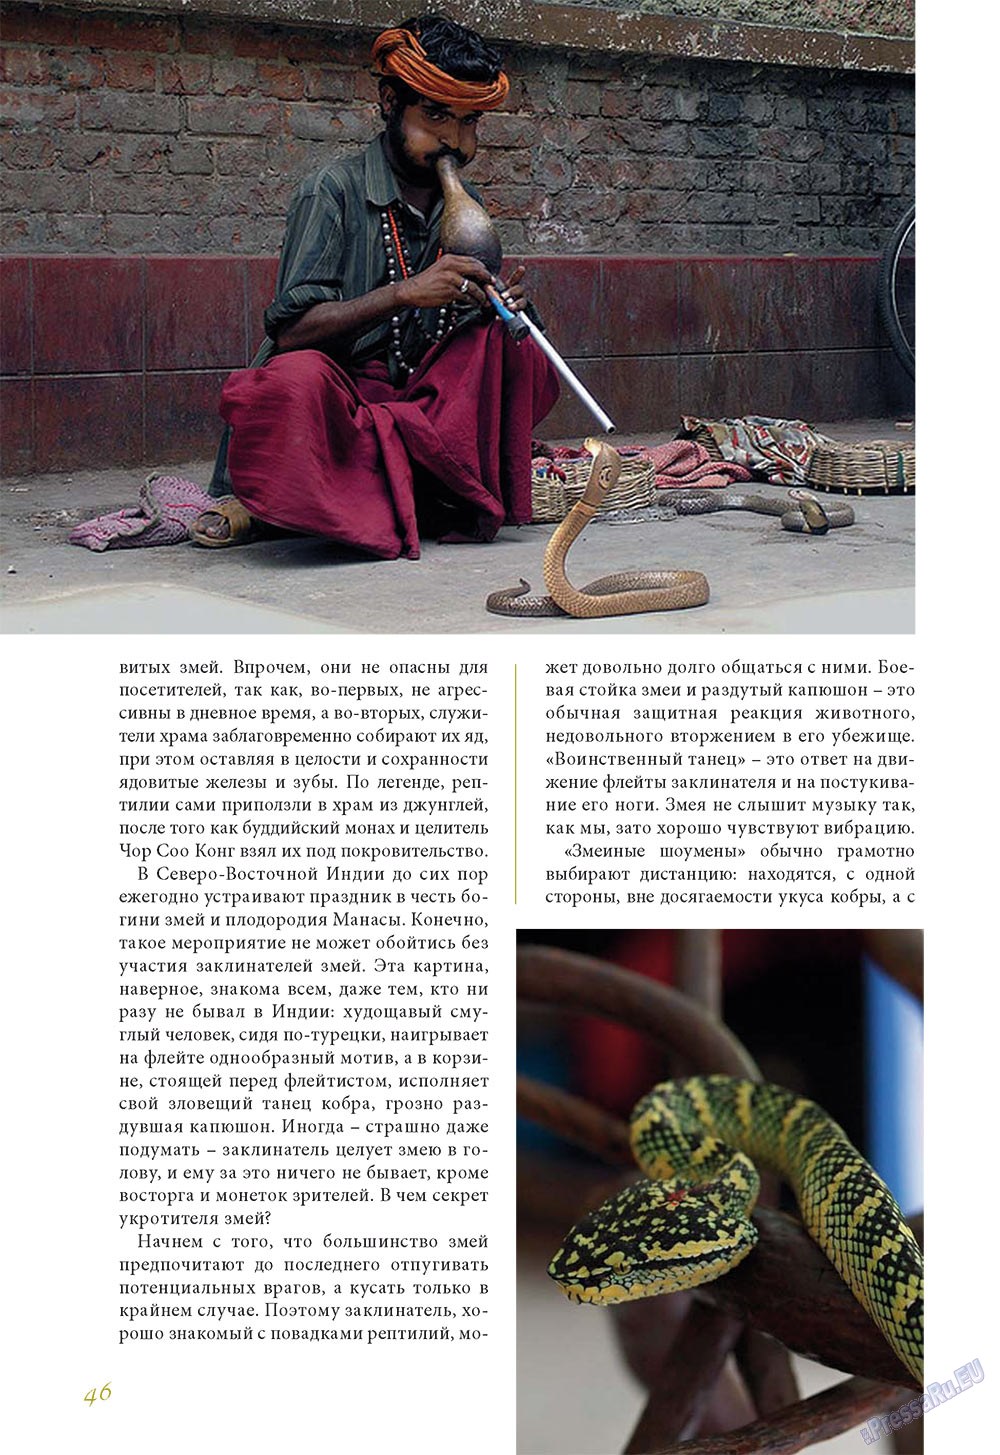 Le Voyageur (журнал). 2012 год, номер 24, стр. 48